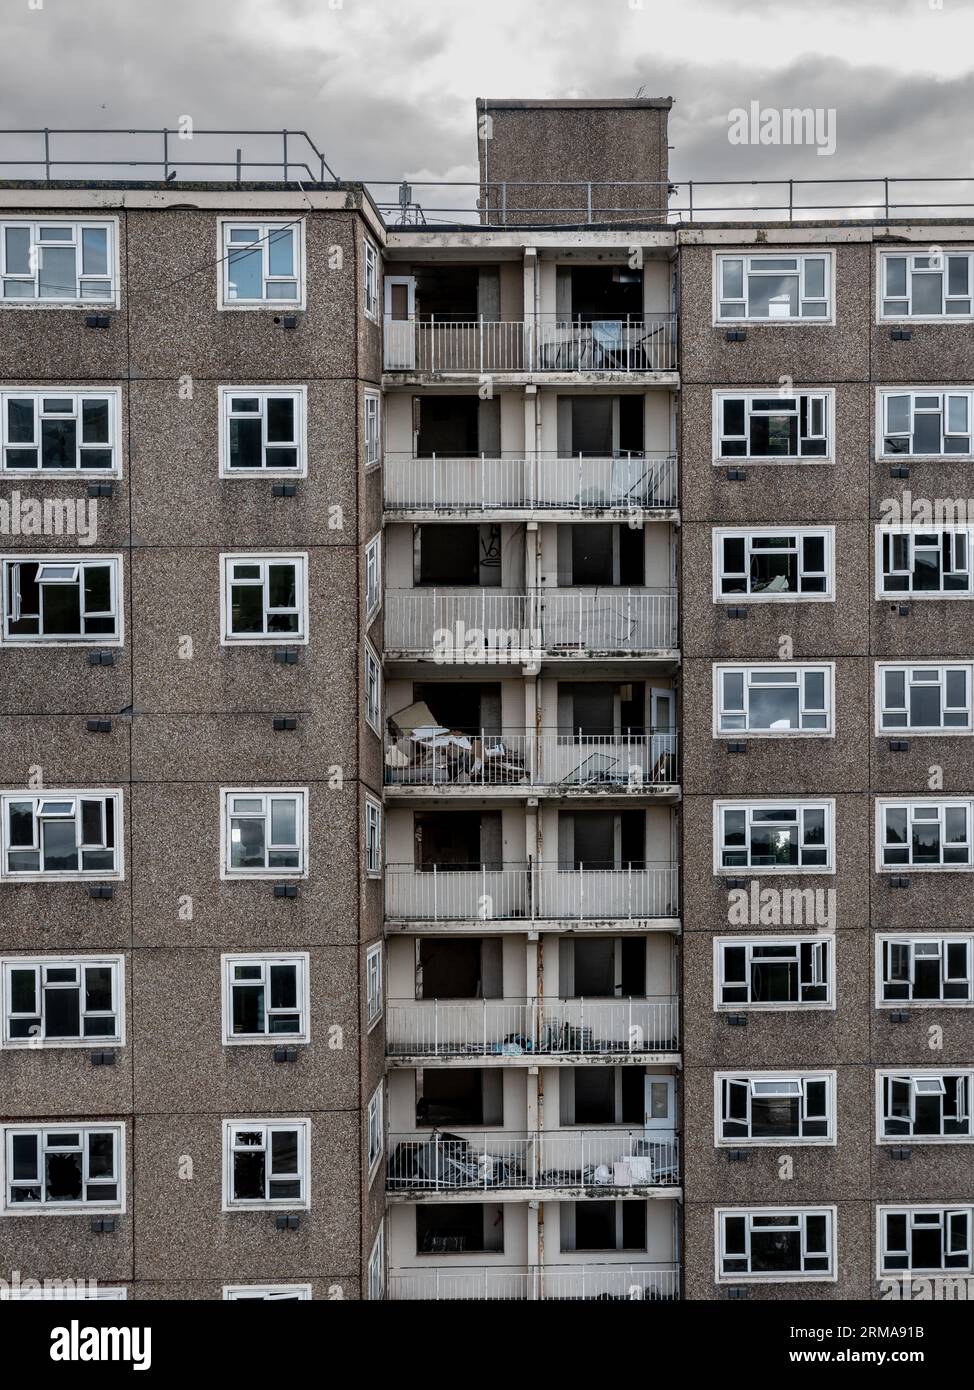 Hintergrund der Architektur eines verlassenen Turmblocks aus den 1960er Jahren mit Reihen von kaputten Fenstern und Balkonen in einem Teil der Innenstadt, der r braucht Stockfoto